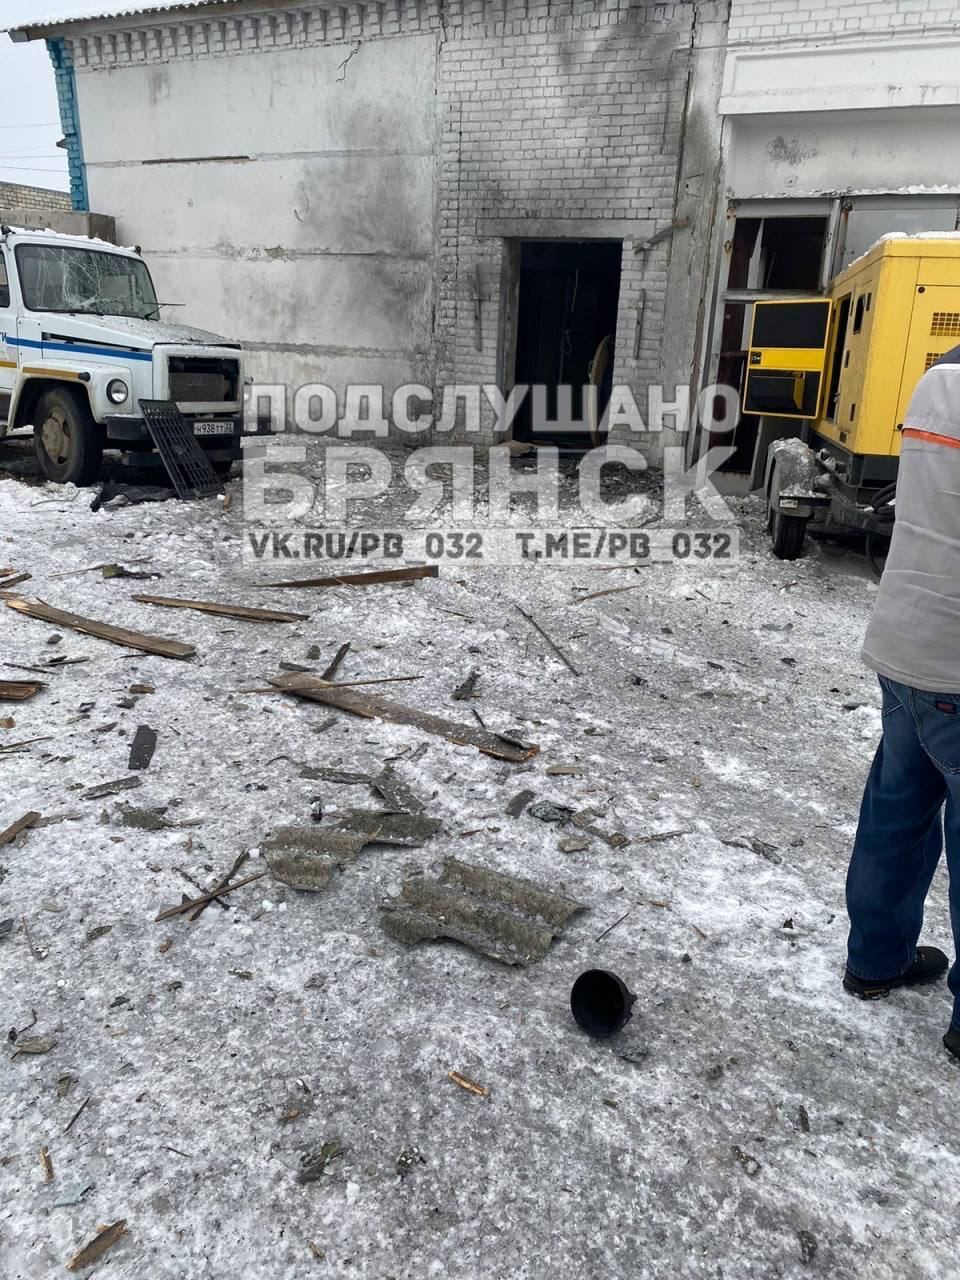 Ані дня без "бавовни": у Трубчевську Брянської області БПЛА атакував будівлю РЕМ, момент потрапив на відео 